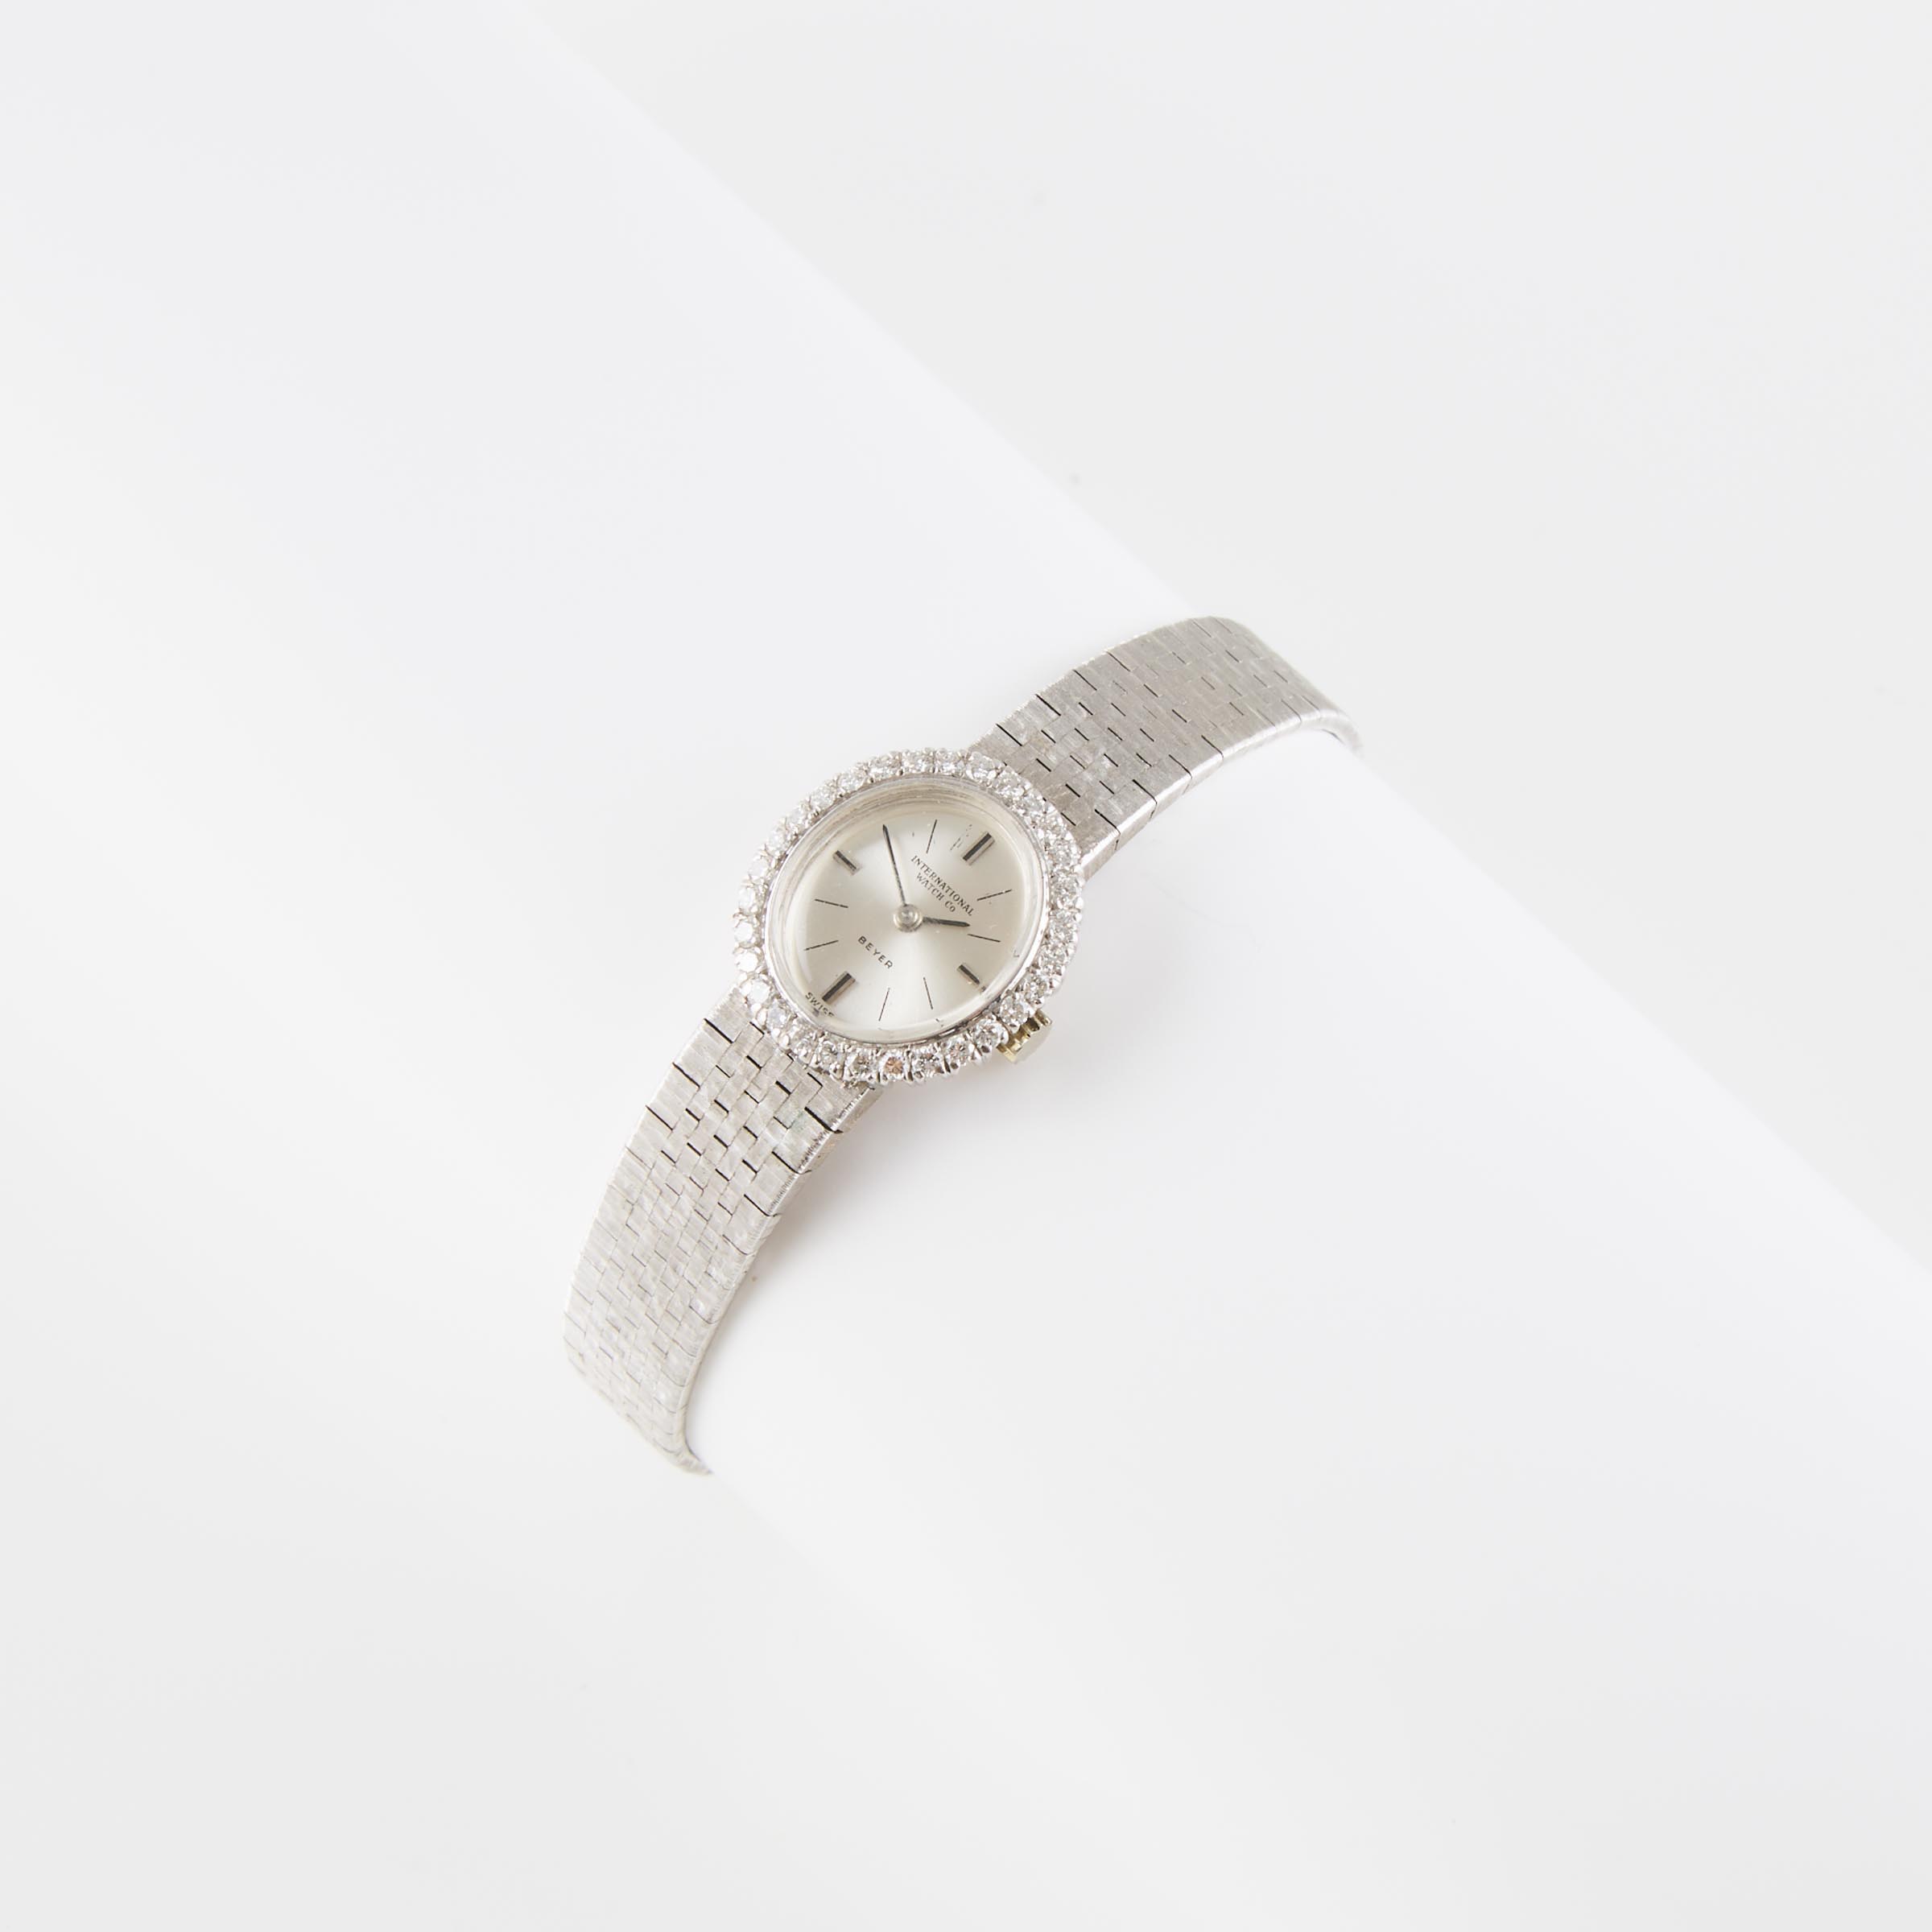 Lady's IWC Schaffhausen Wristwatch